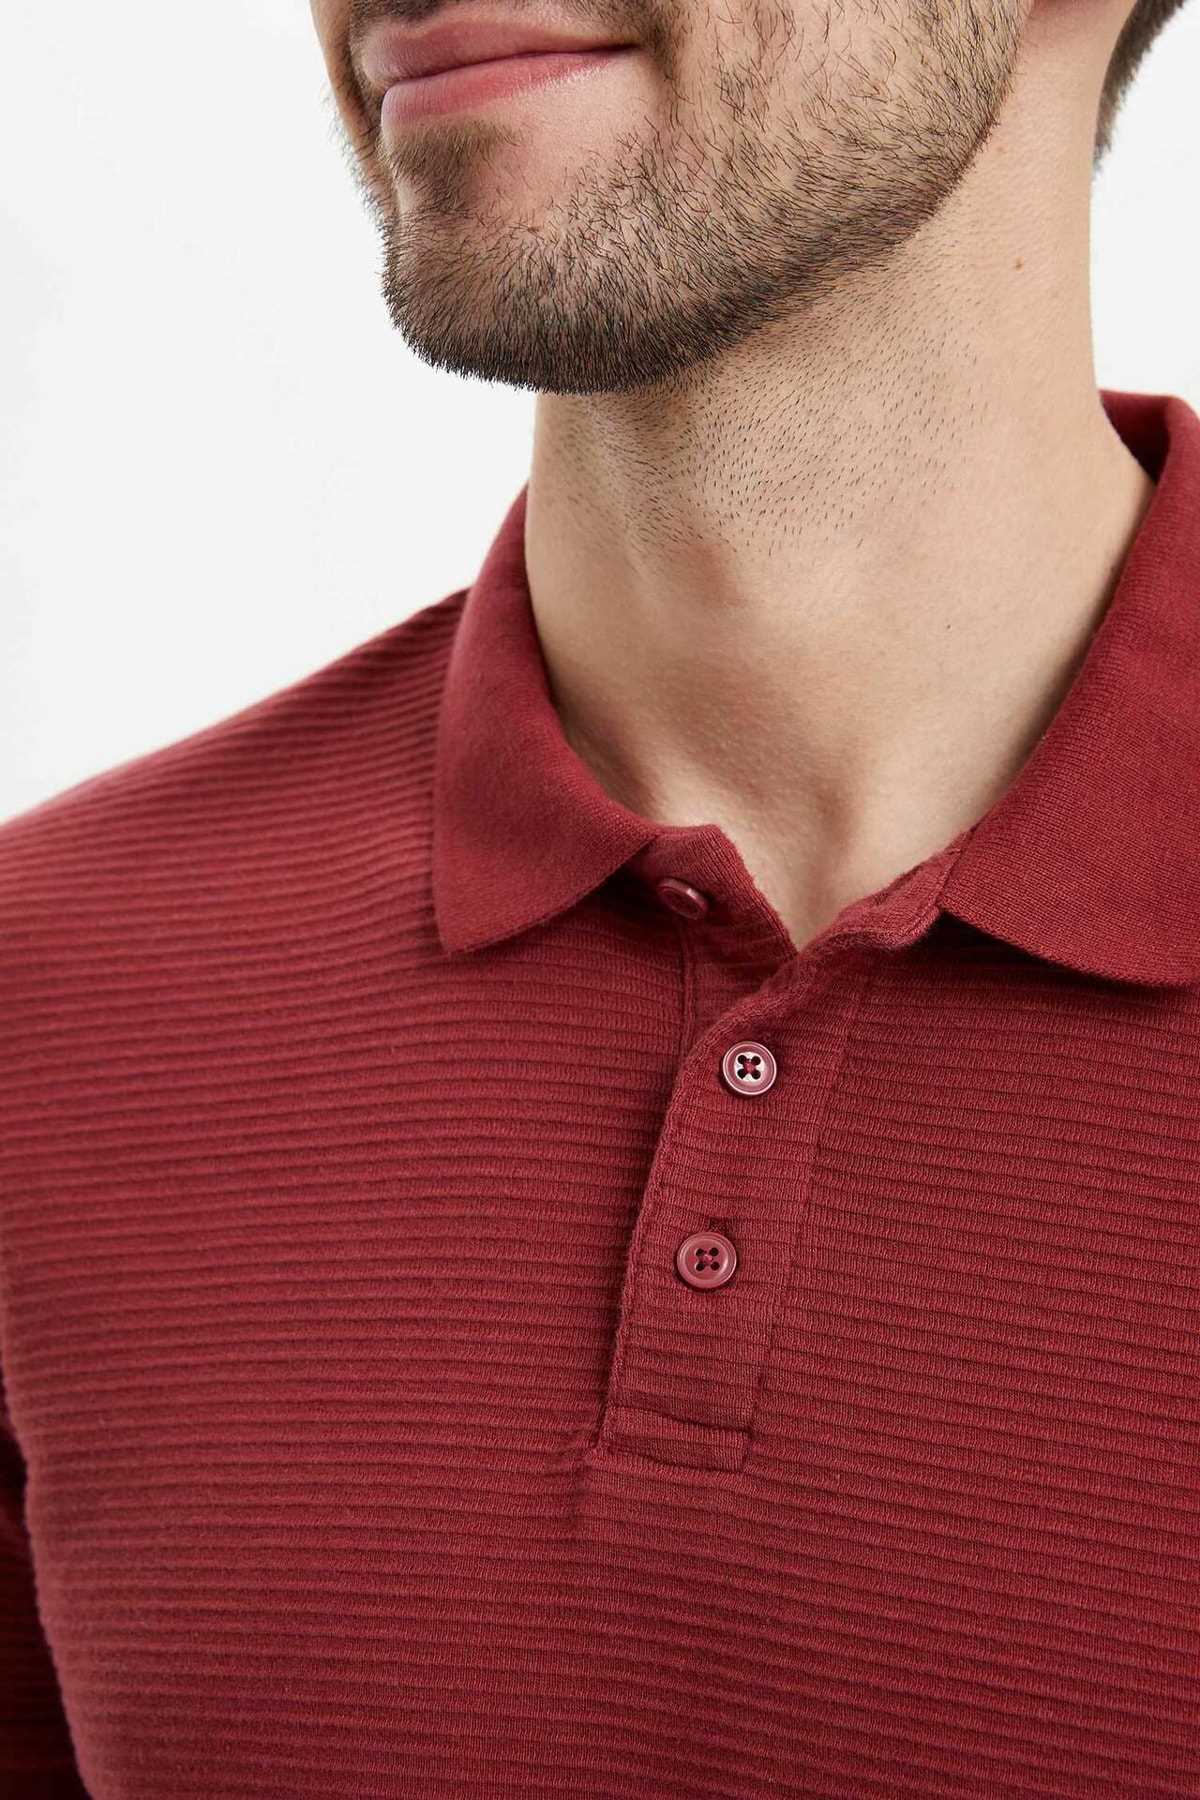 خرید انلاین تی شرت مردانه خاص برند دفاکتو ترکیه رنگ زرشکی ty36431780